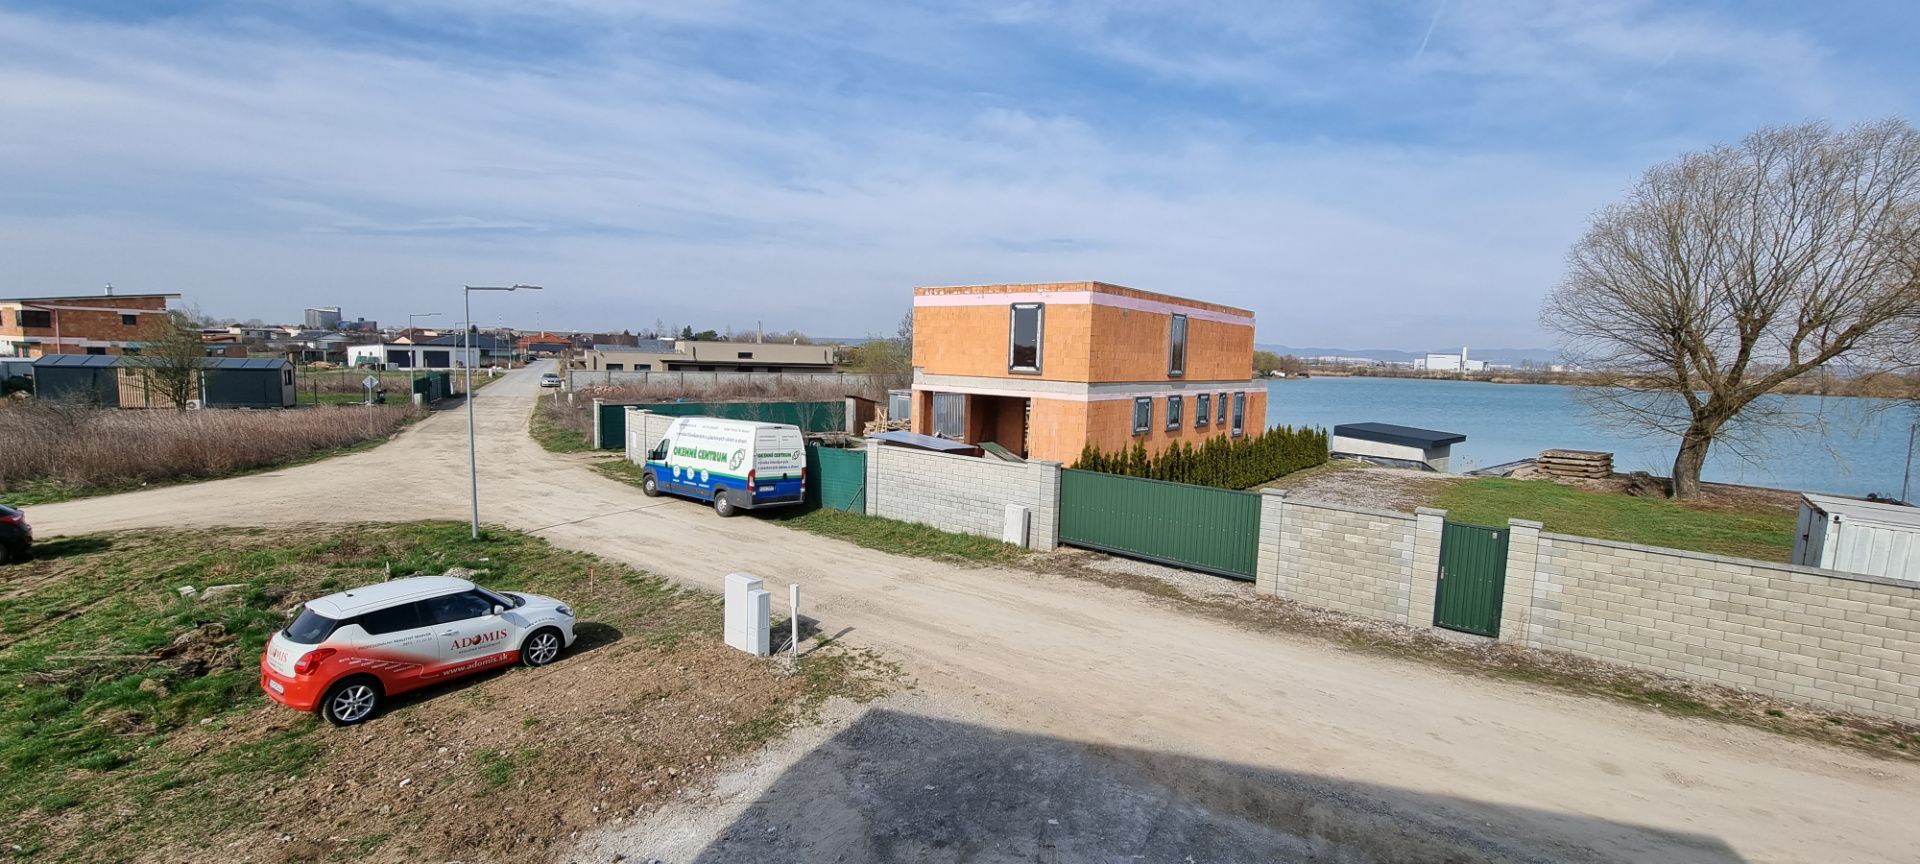 ADOMIS - Predám pekný stavebný pozemok s platným stav.povolením na výstavbu 2-podlažného domu, obec Čaňa, len 12 min z Košíc.